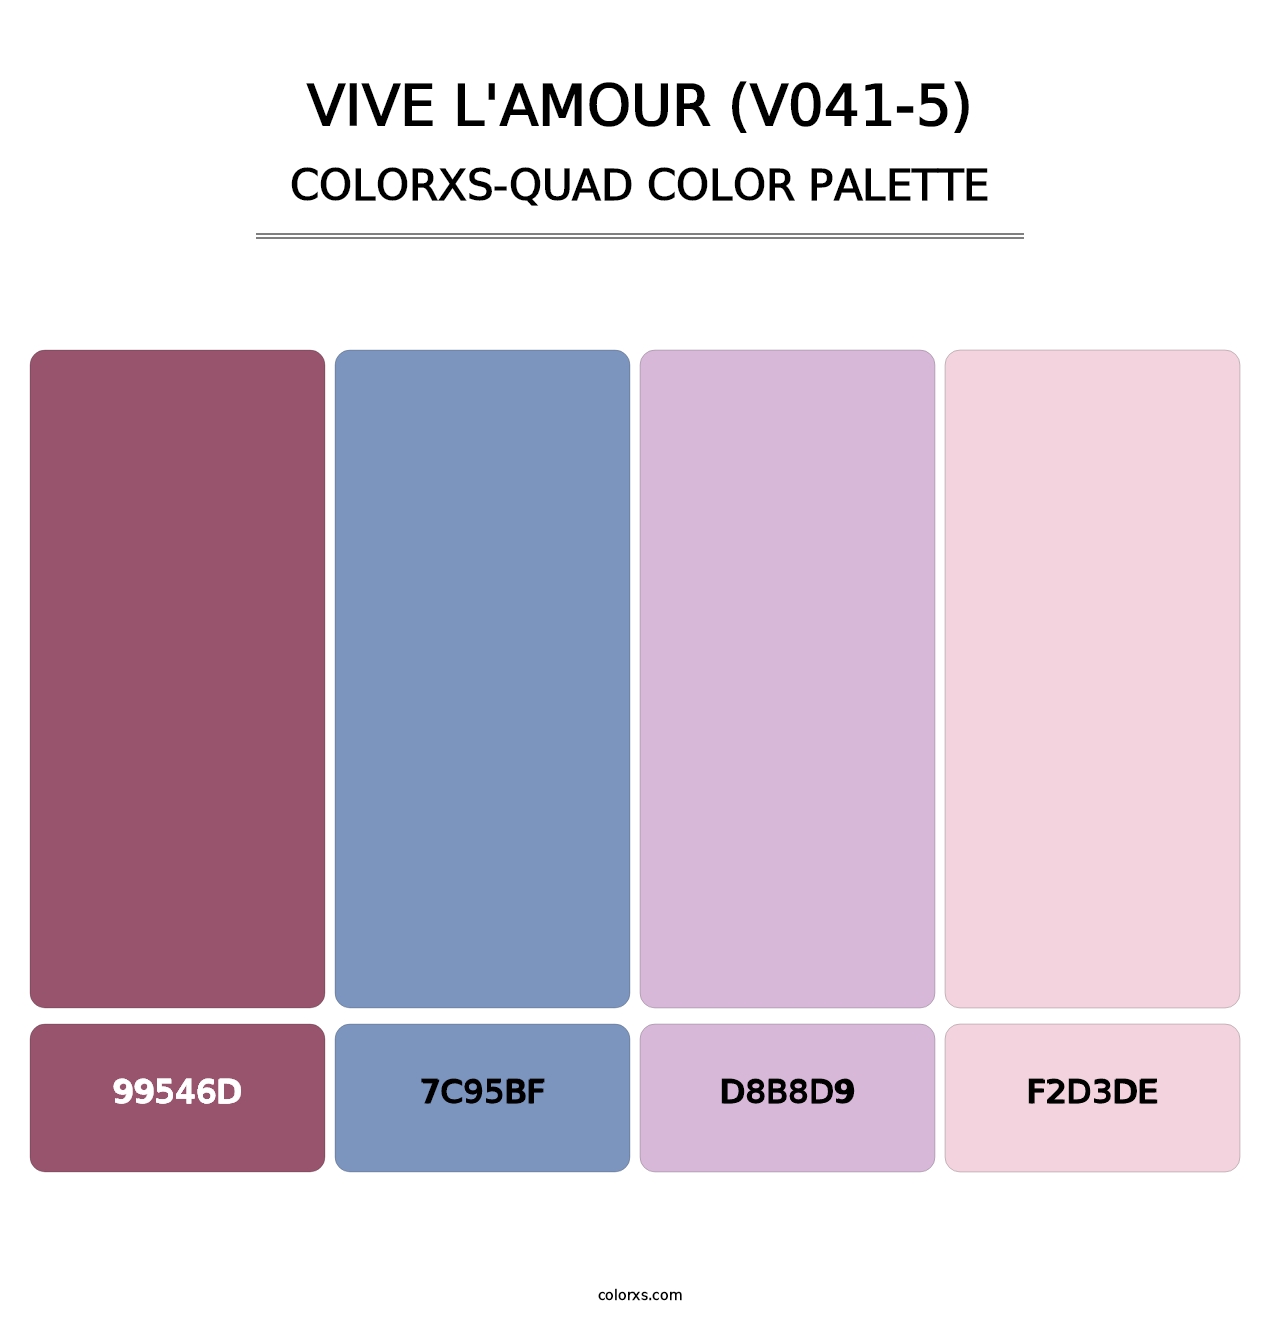 Vive l'amour (V041-5) - Colorxs Quad Palette